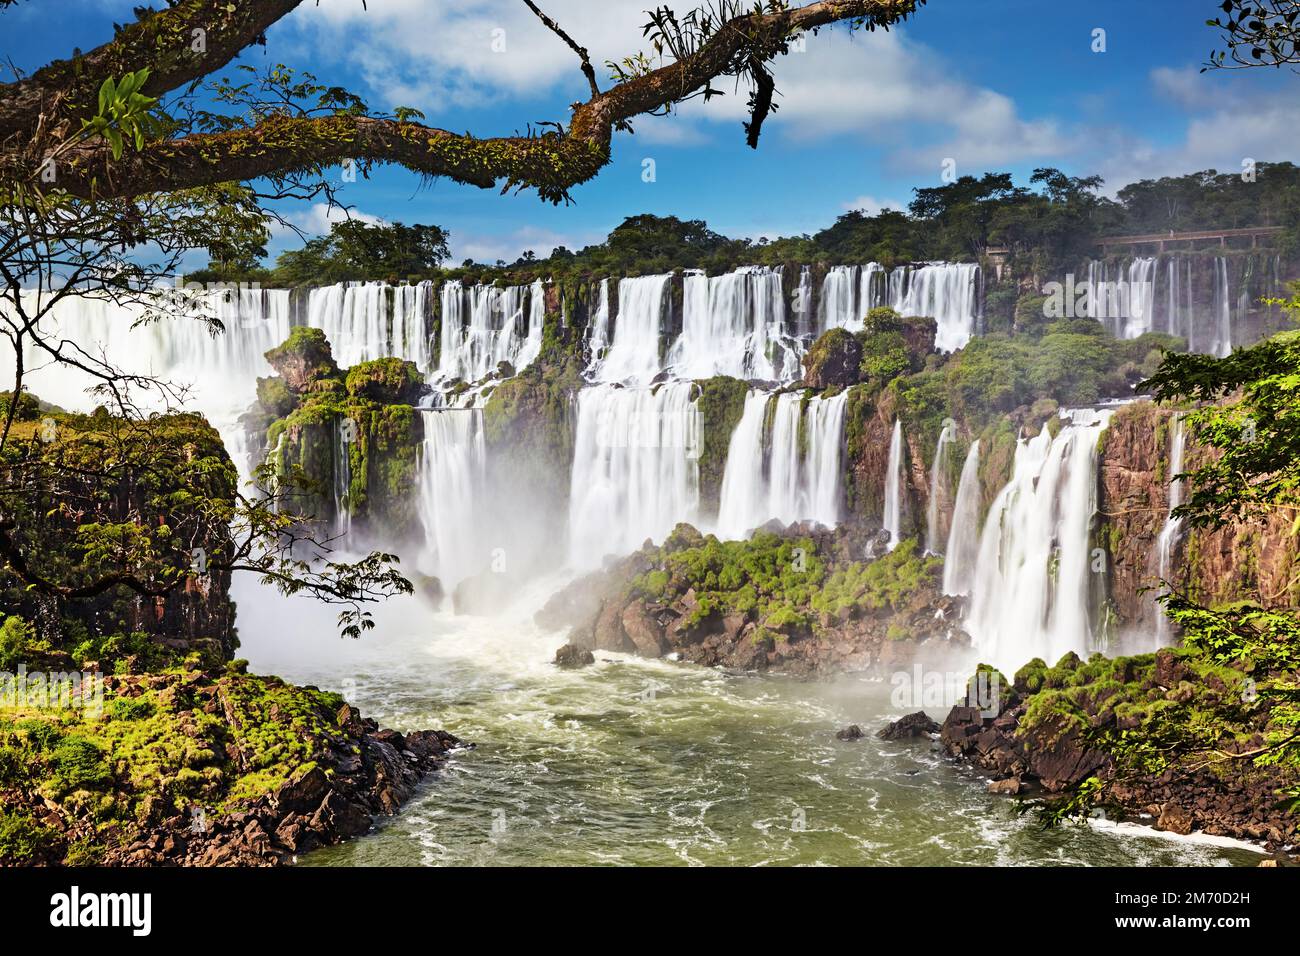 Les chutes d'Iguassu, la plus grande série de chutes d'eau du monde, situées à la frontière brésilienne et Argentine, vue du côté argentin Banque D'Images